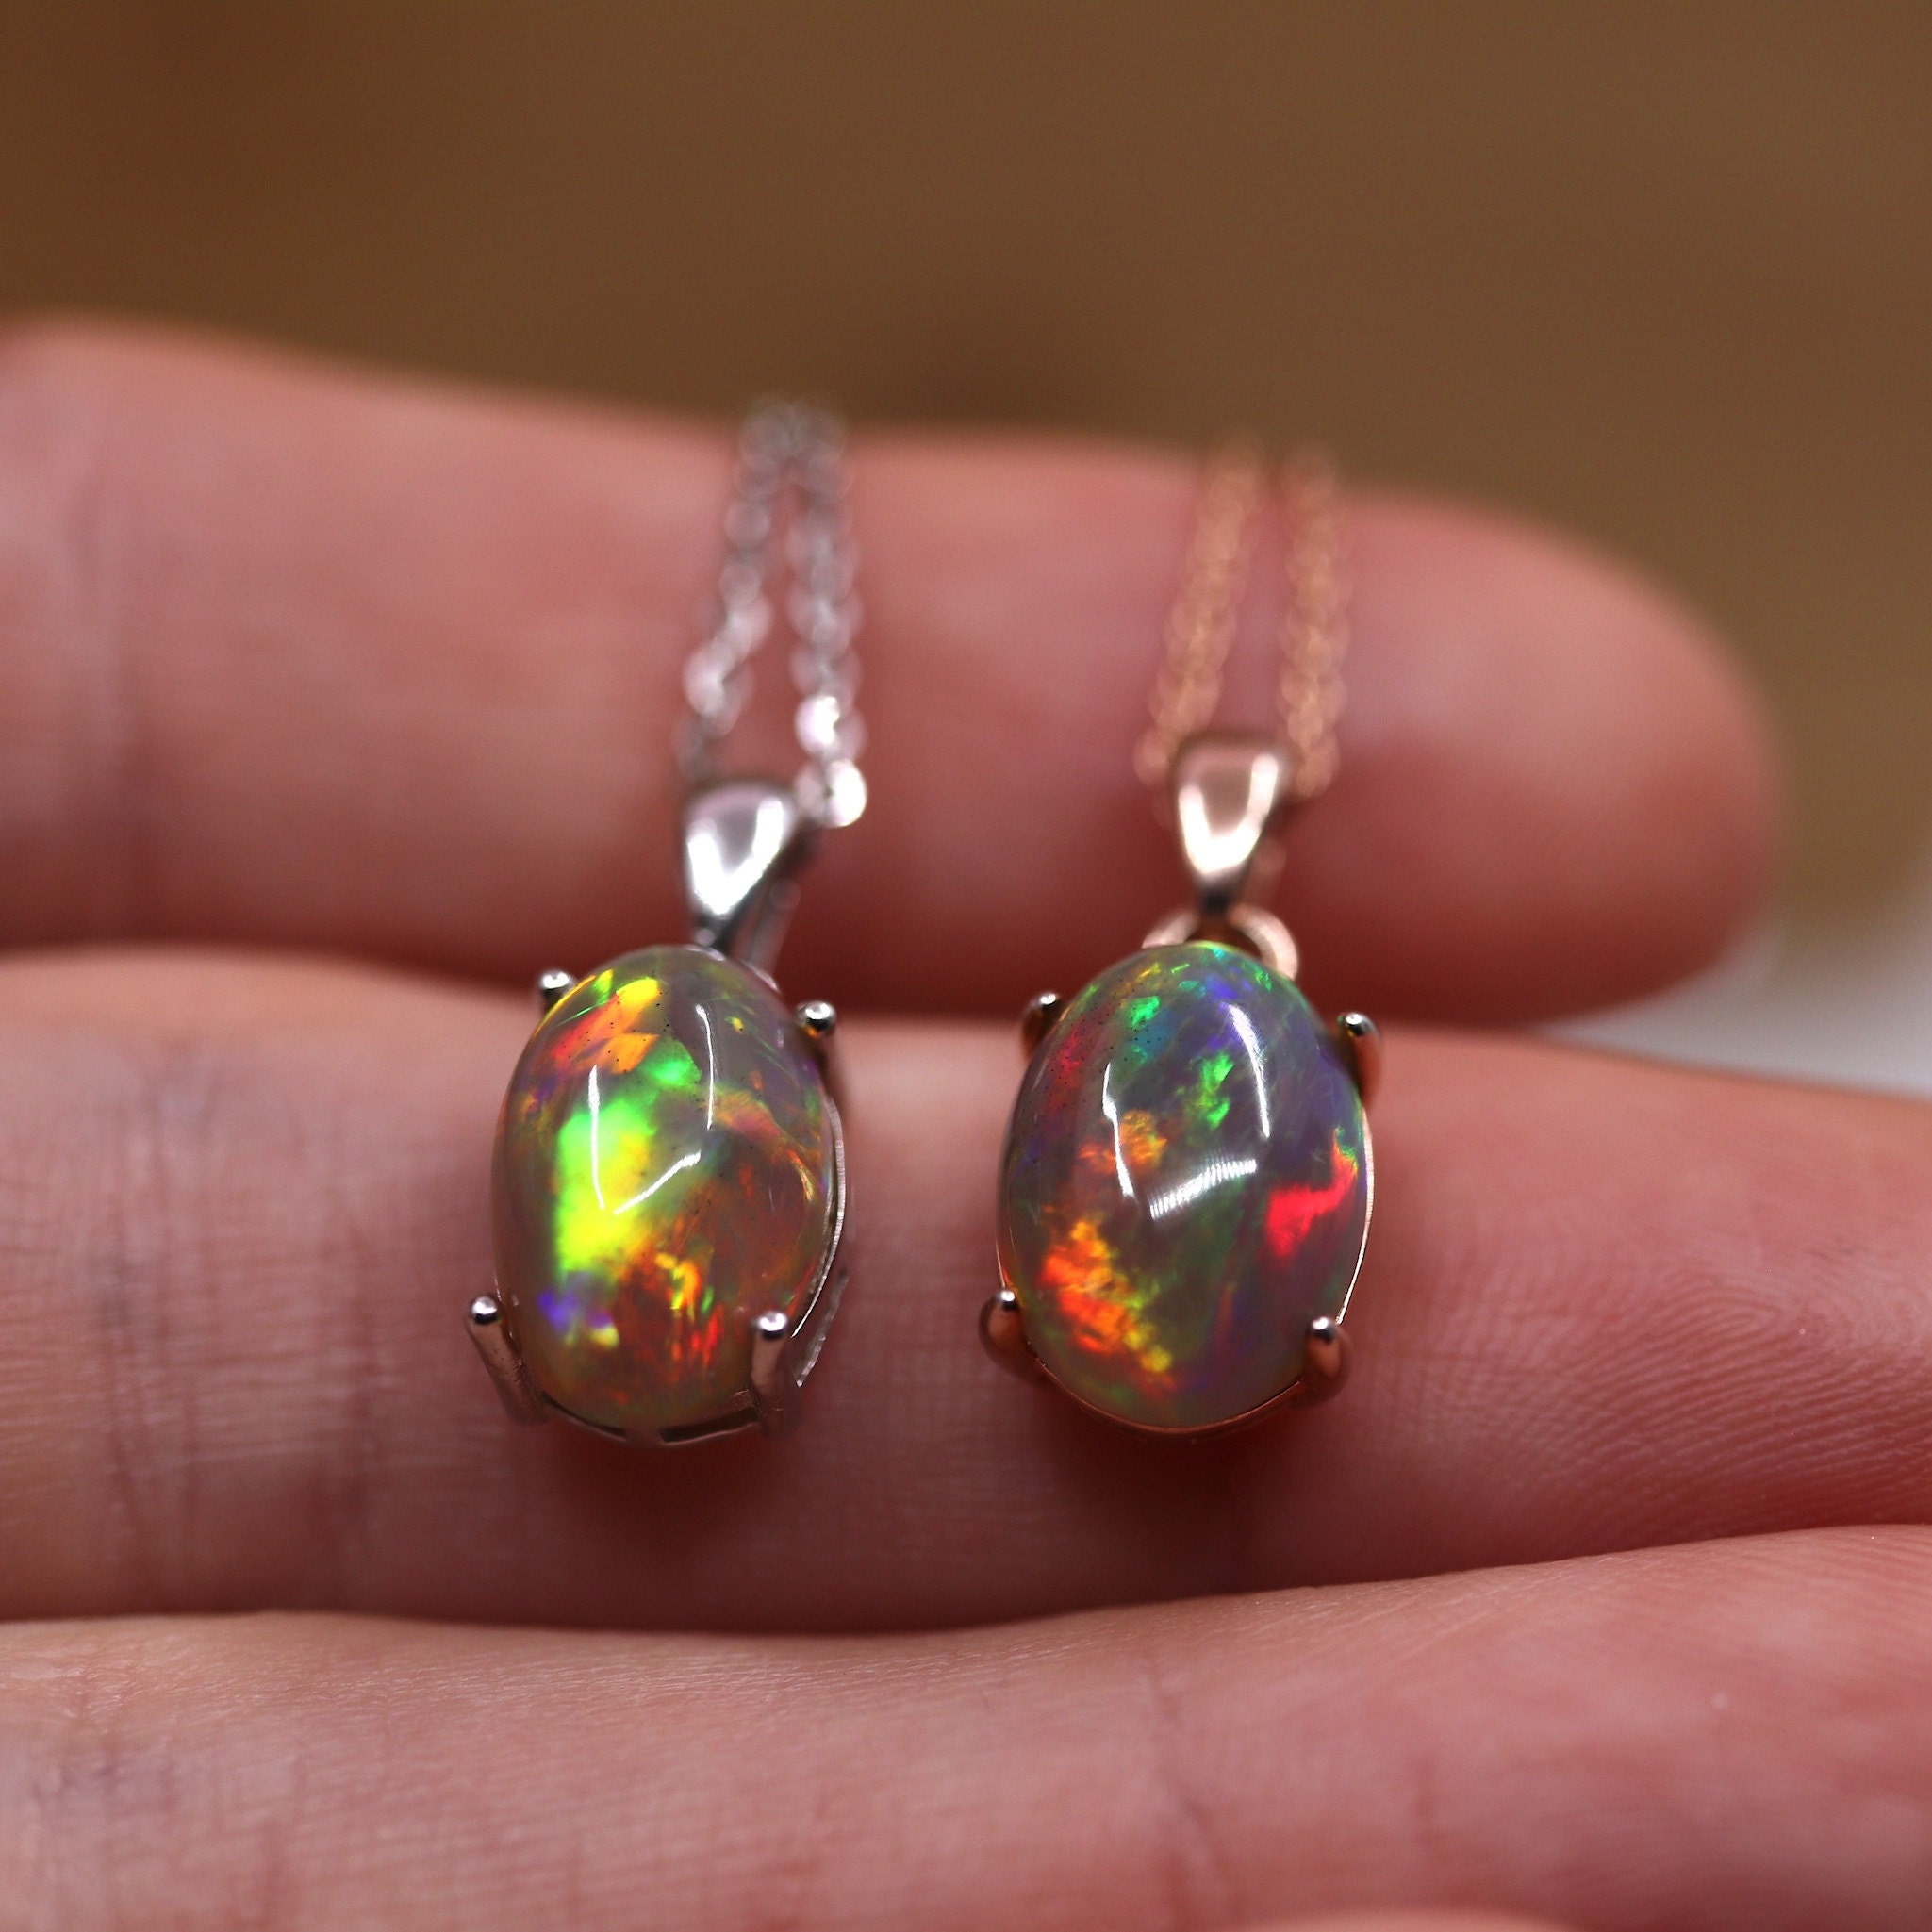 Fire opal necklaces rare quality grade